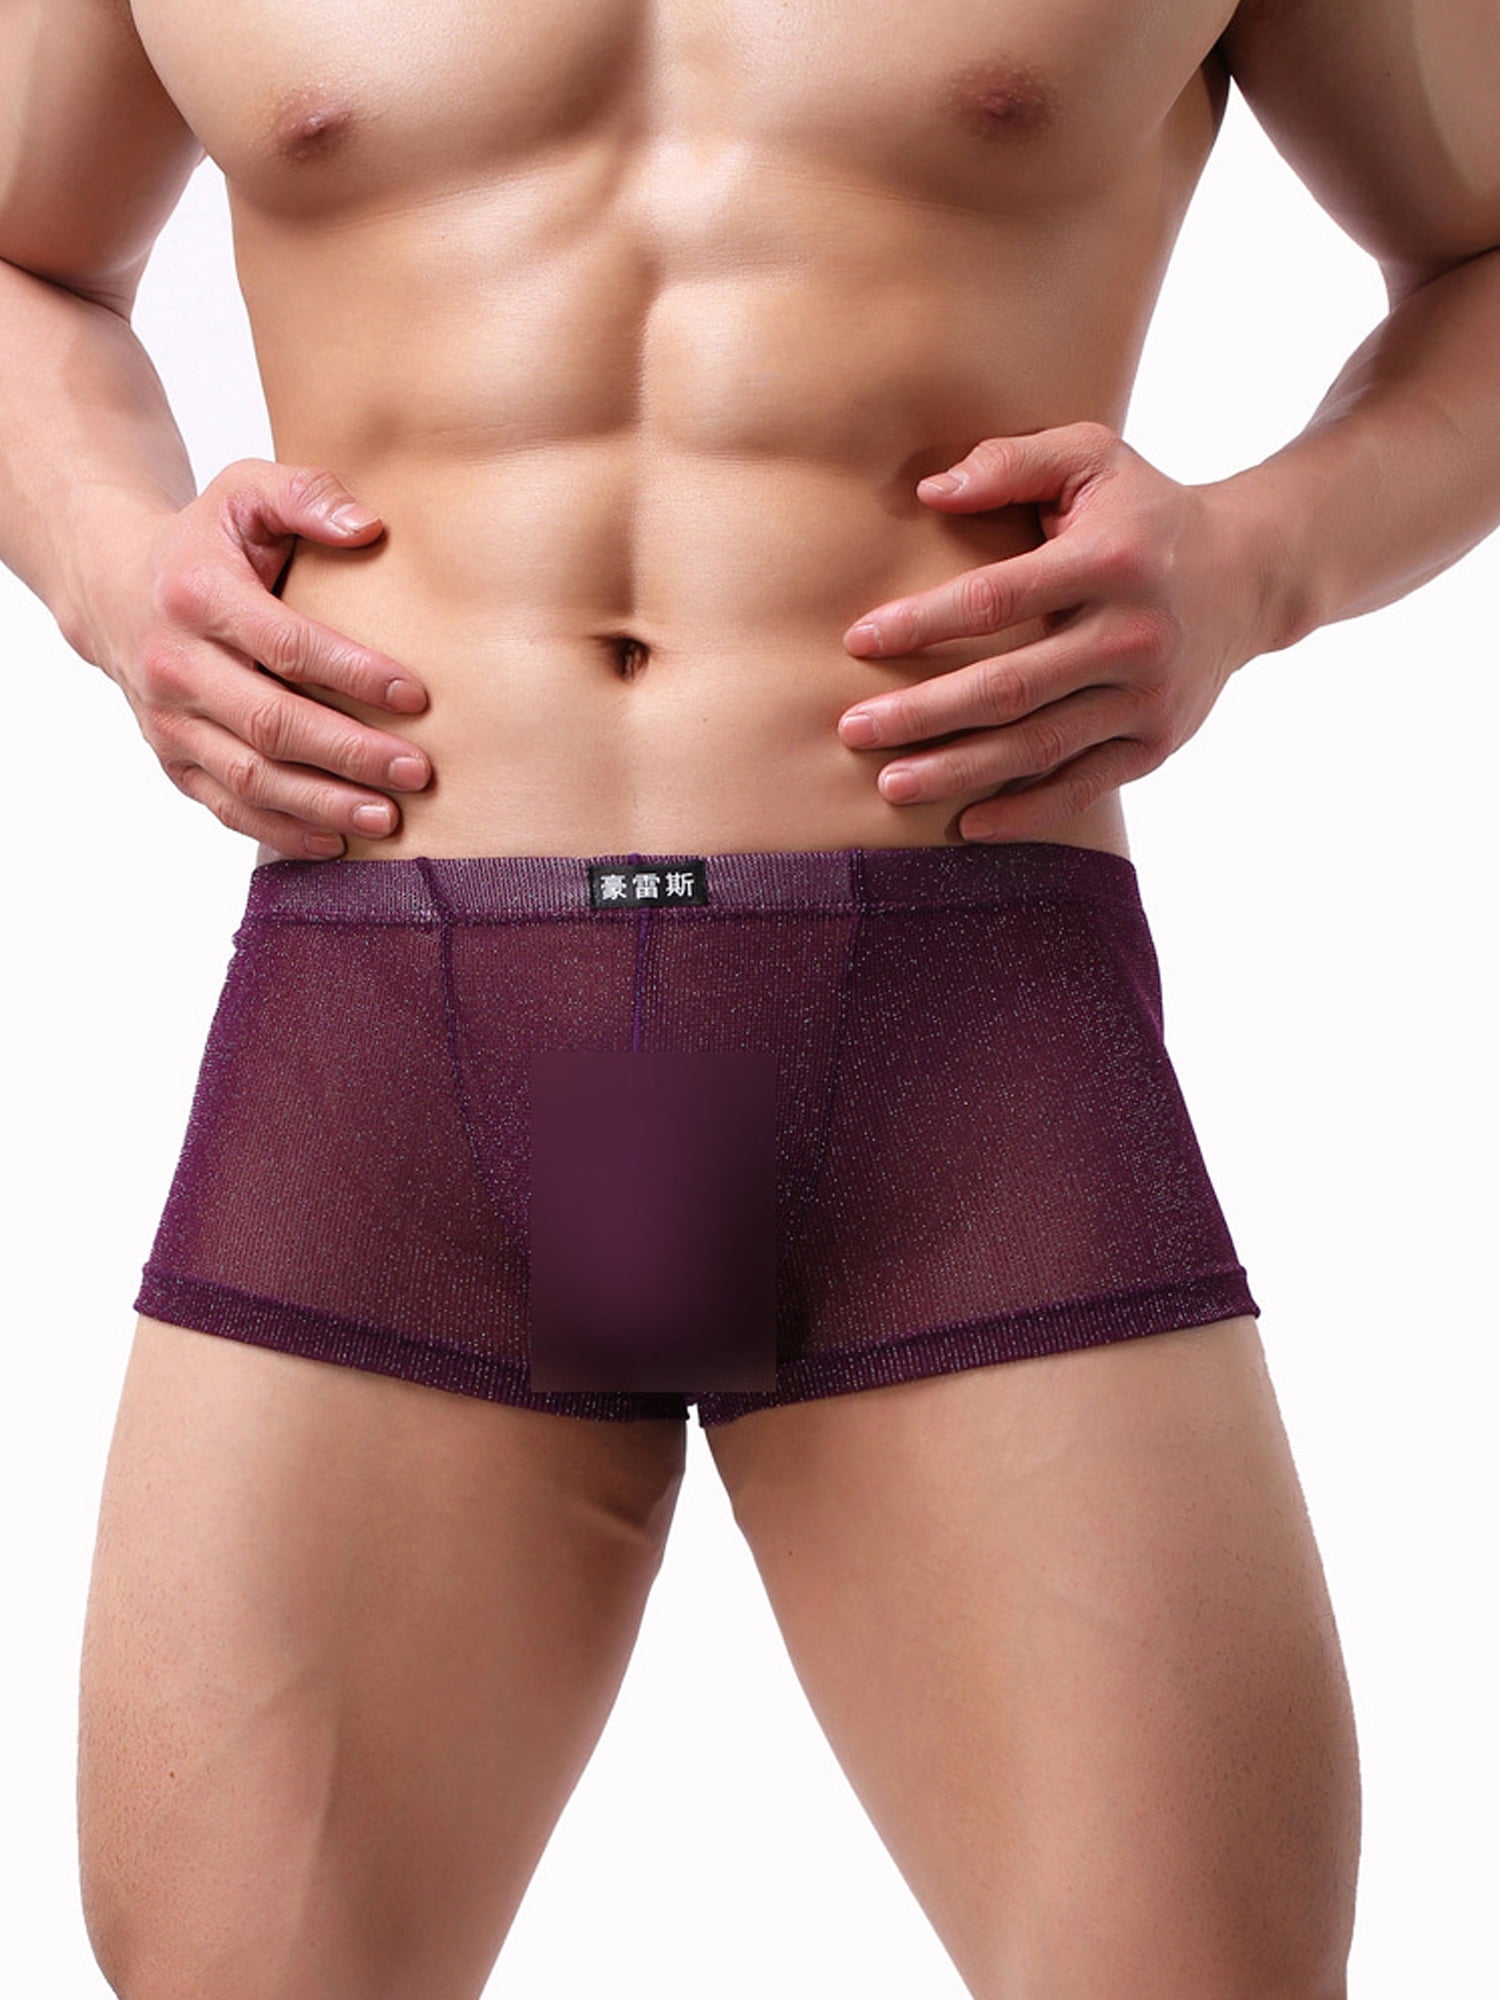 Transparent Underwear Underpants Mesh Bulge Pouch Shorts Low-rise Sheer Briefs 